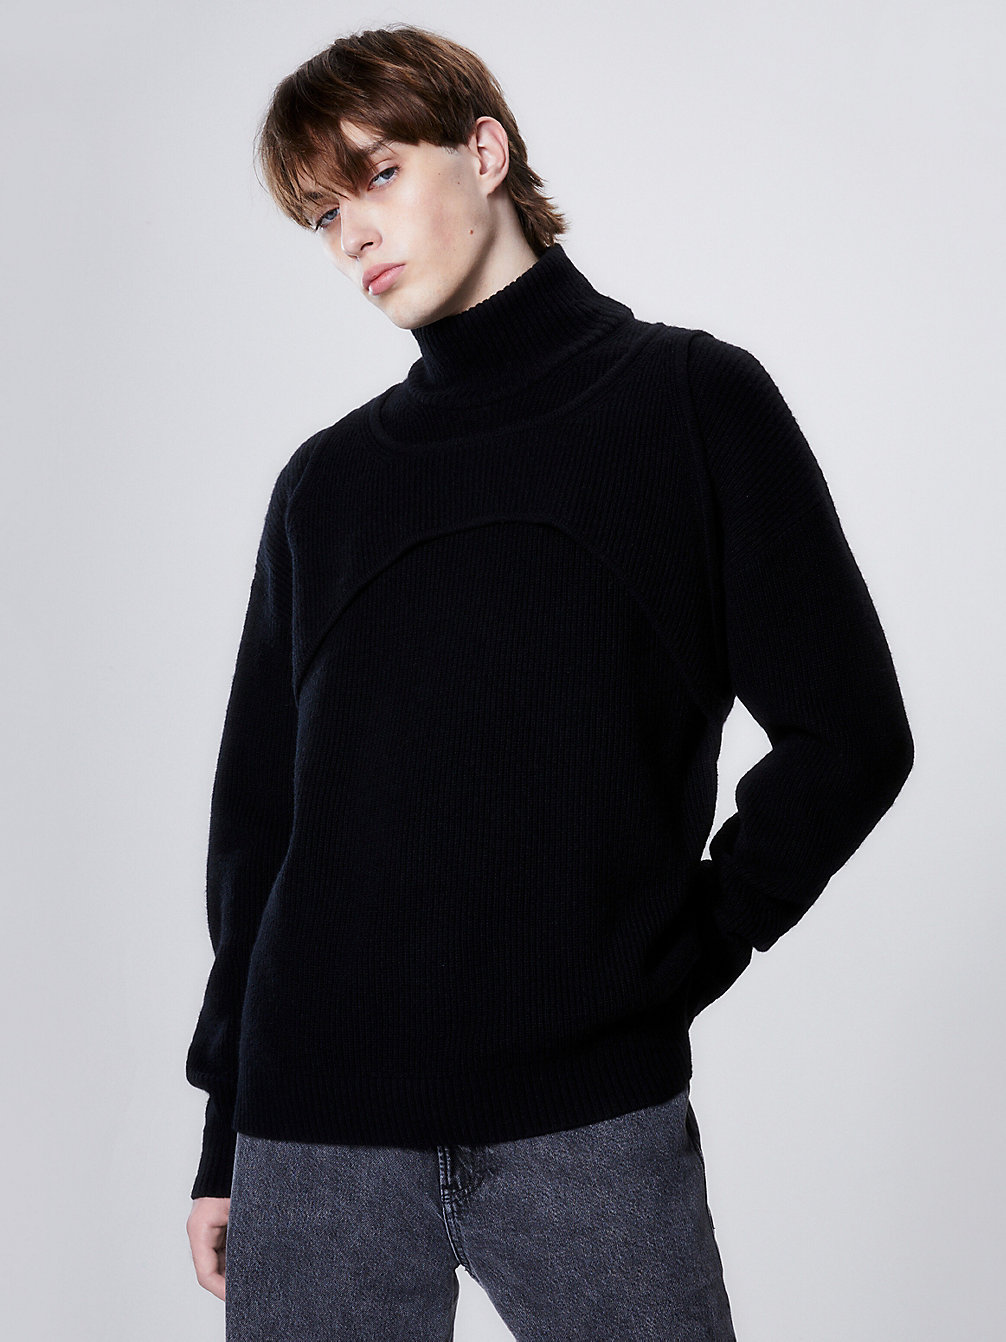 CK BLACK > Swobodny Wełniany Sweter Z Uprzężą > undefined Mężczyźni - Calvin Klein